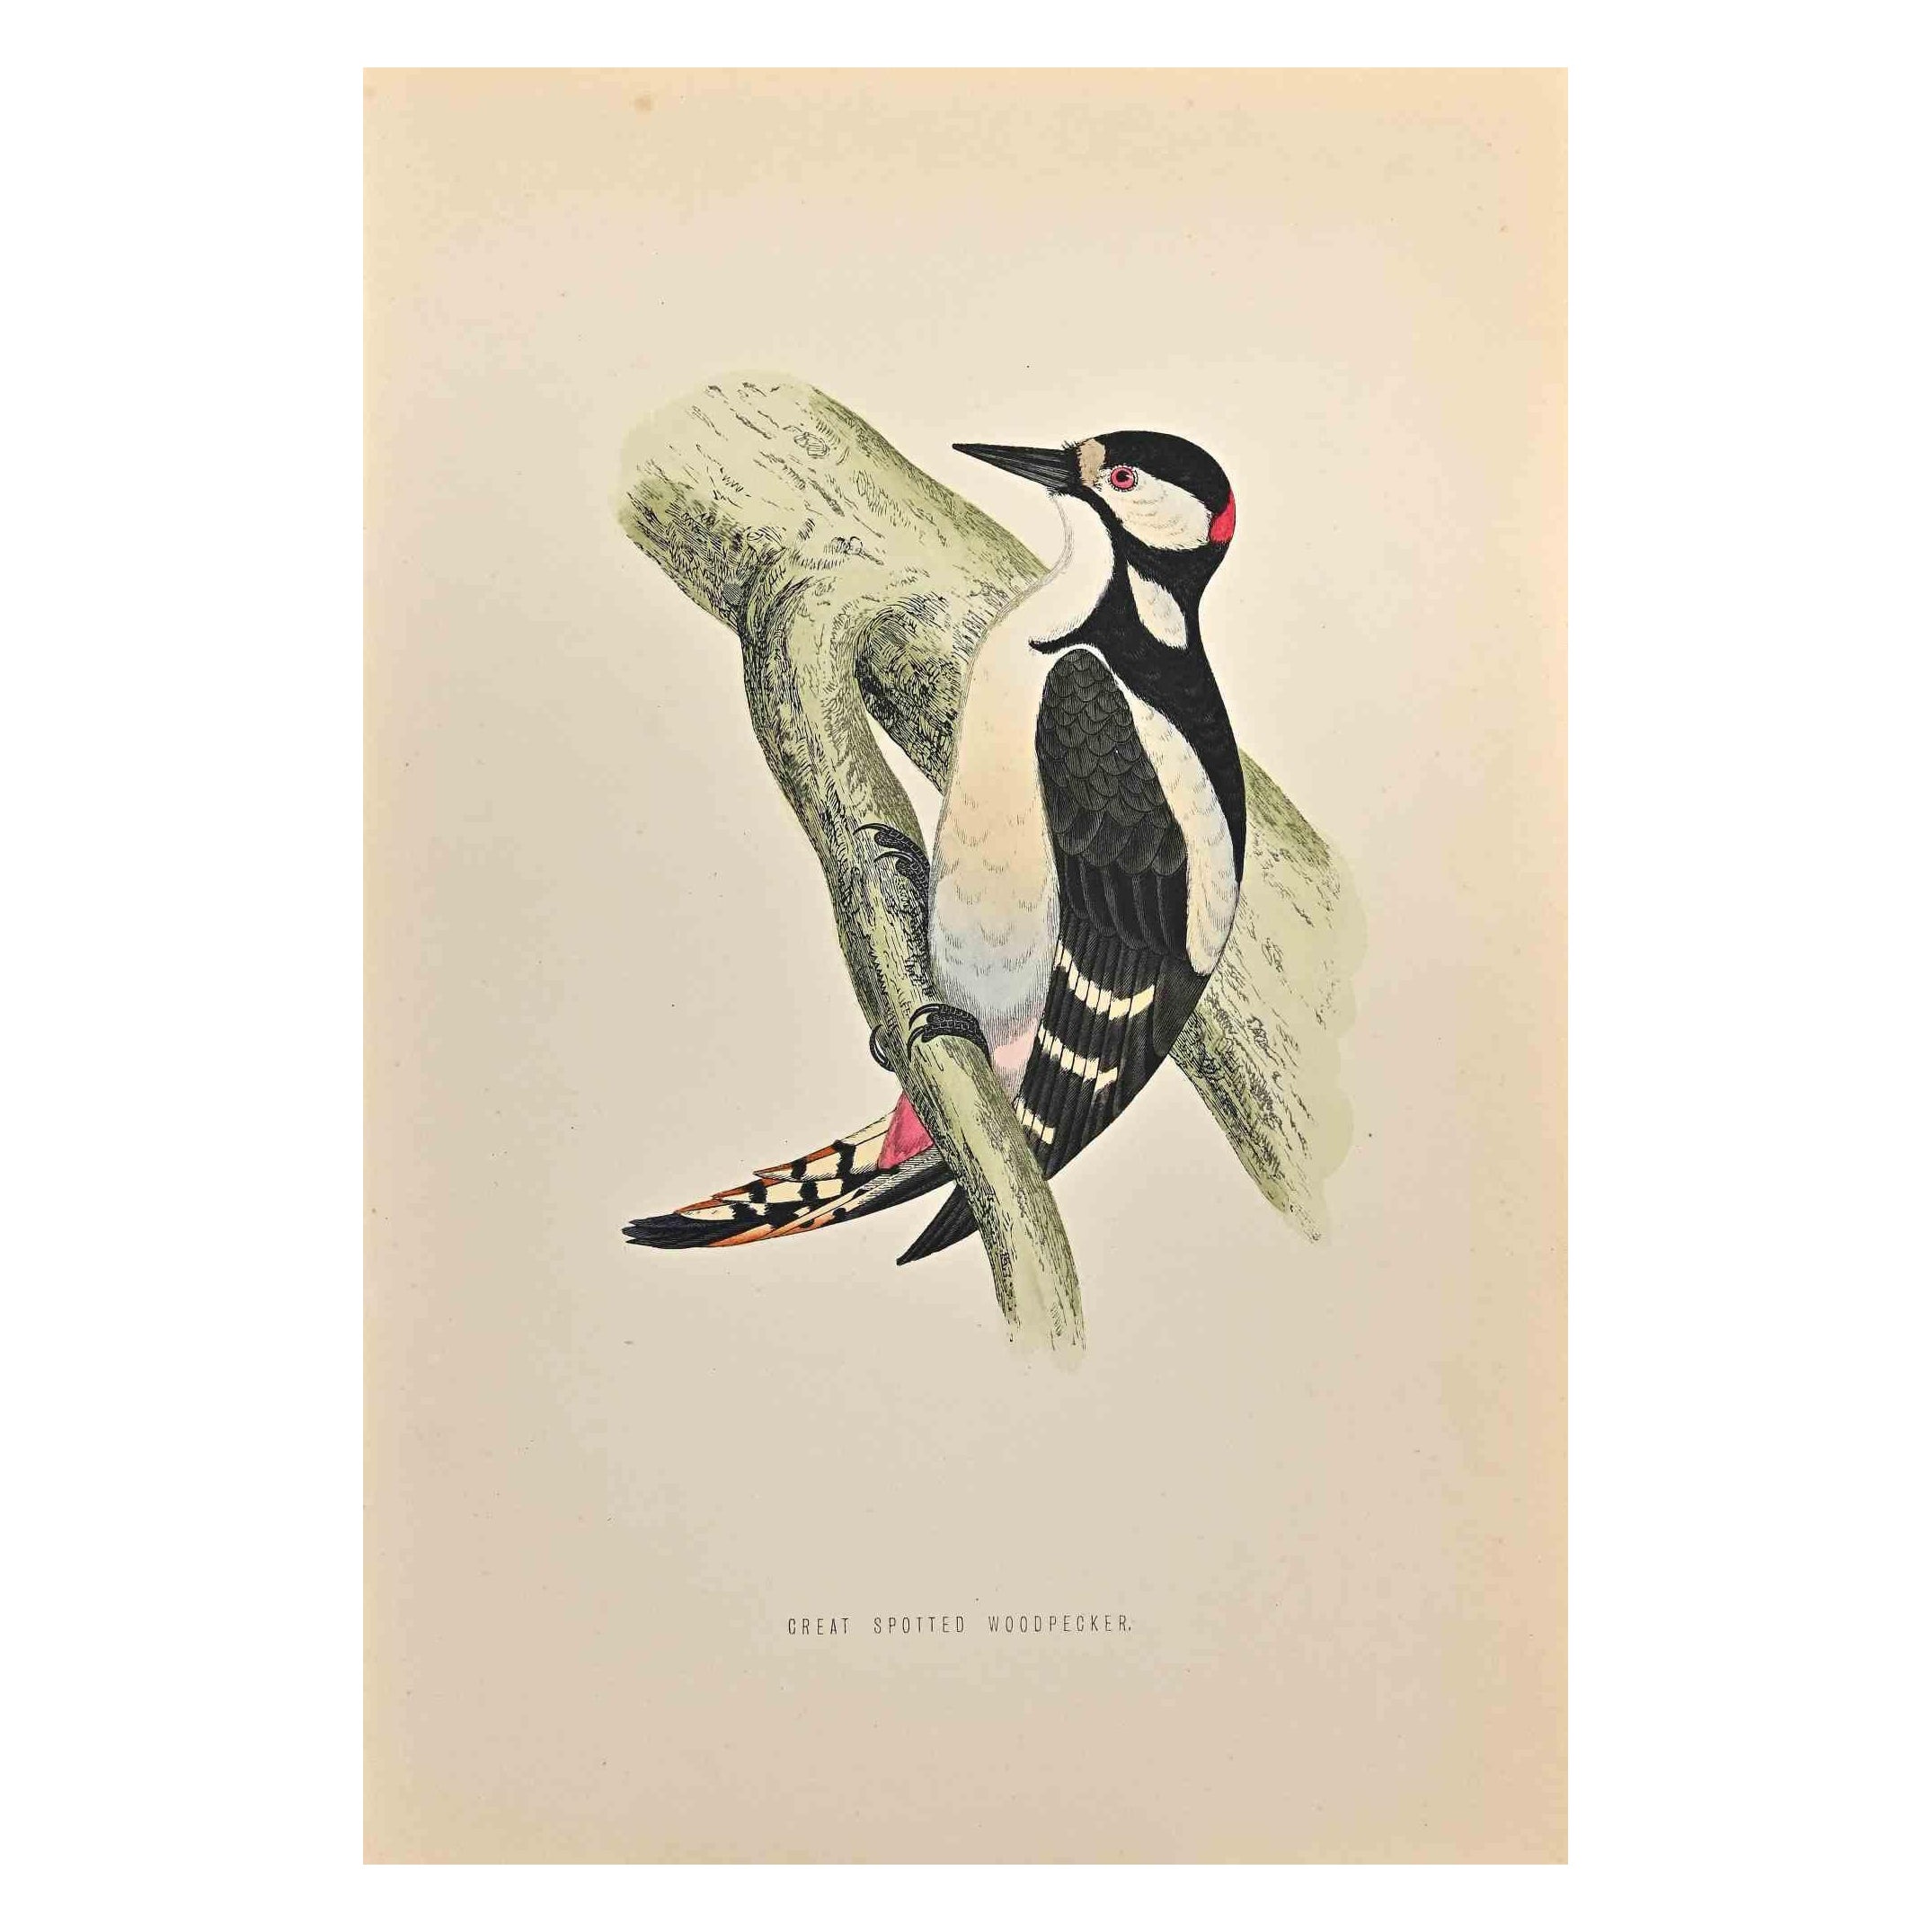 Le pic épeiche est une œuvre d'art moderne réalisée en 1870 par l'artiste britannique Alexander Francis Lydon (1836-1917).

Gravure sur bois sur papier couleur ivoire.

Coloré à la main, publié par Londres, Bell & Sons, 1870.  

Le nom de l'oiseau